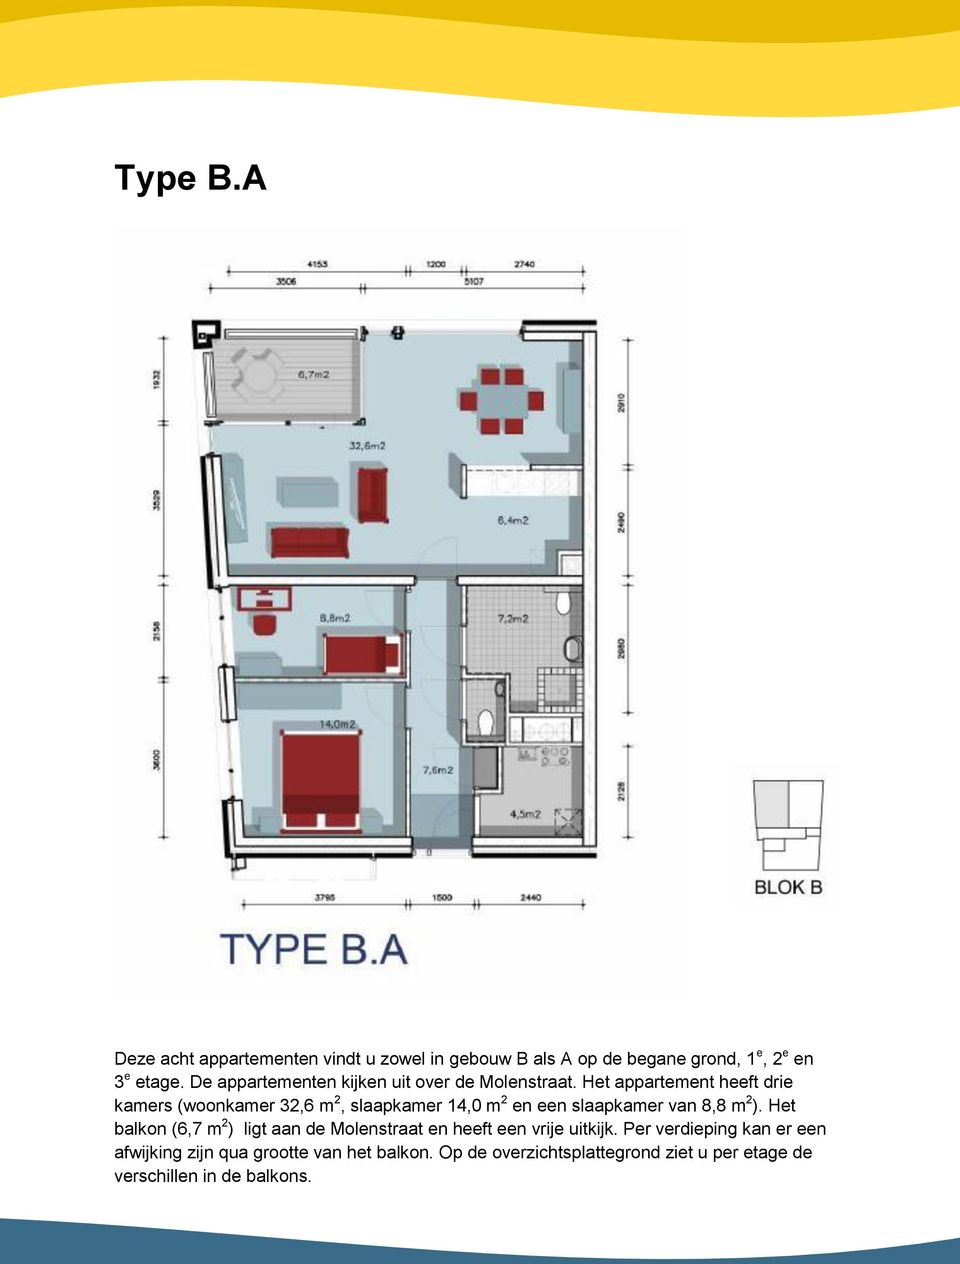 Het appartement heeft drie kamers (woonkamer 32,6 m 2, slaapkamer 14,0 m 2 en een slaapkamer van 8,8 m 2 ).